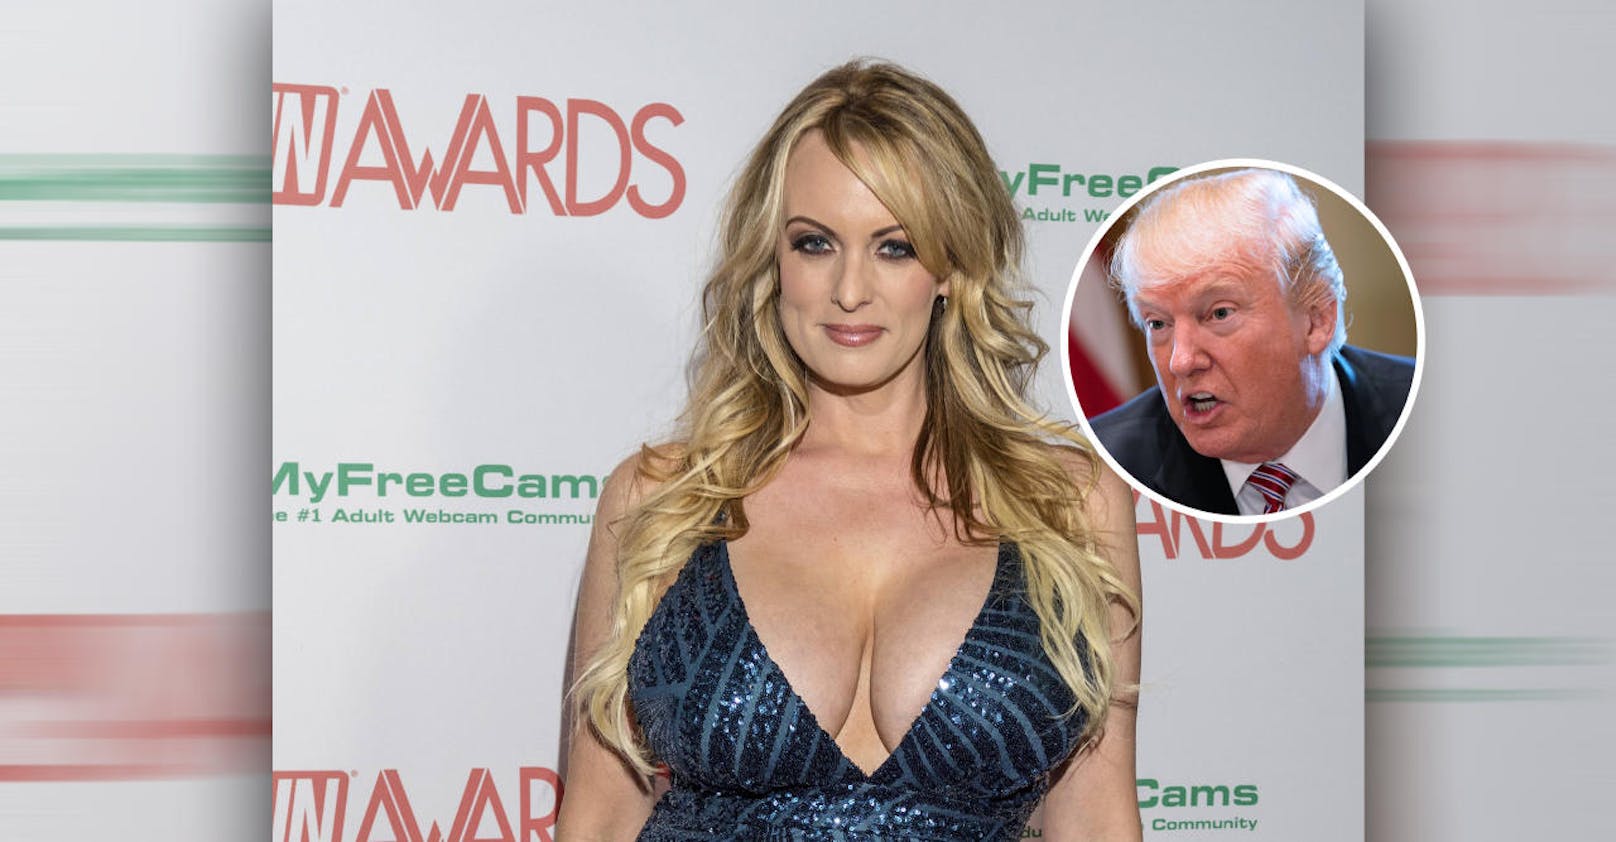 Porno-Star sagt gegen Trump aus – jetzt droht Anklage